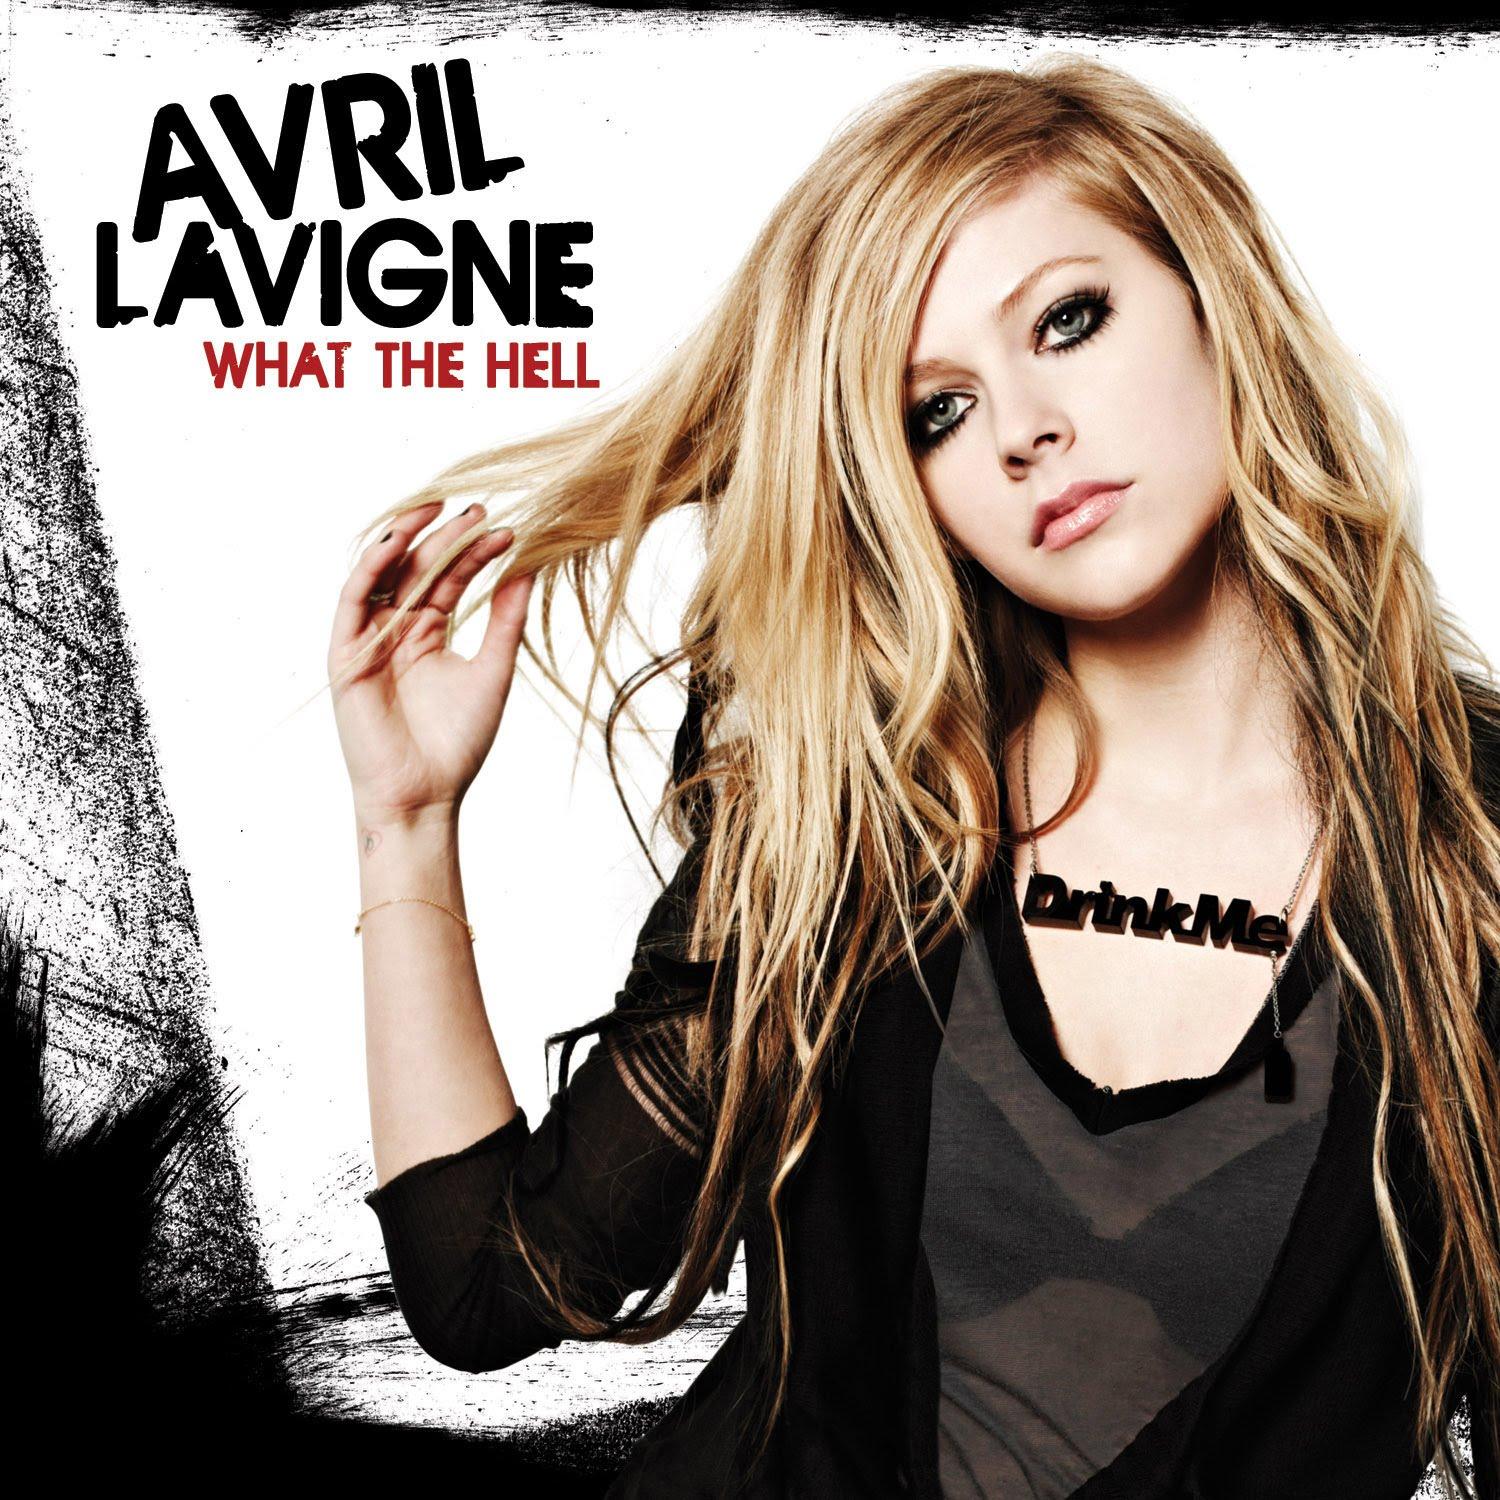 ロックな歌姫Avril Lavigne(アヴリル・ラヴィーン)のおすすめ10曲紹介